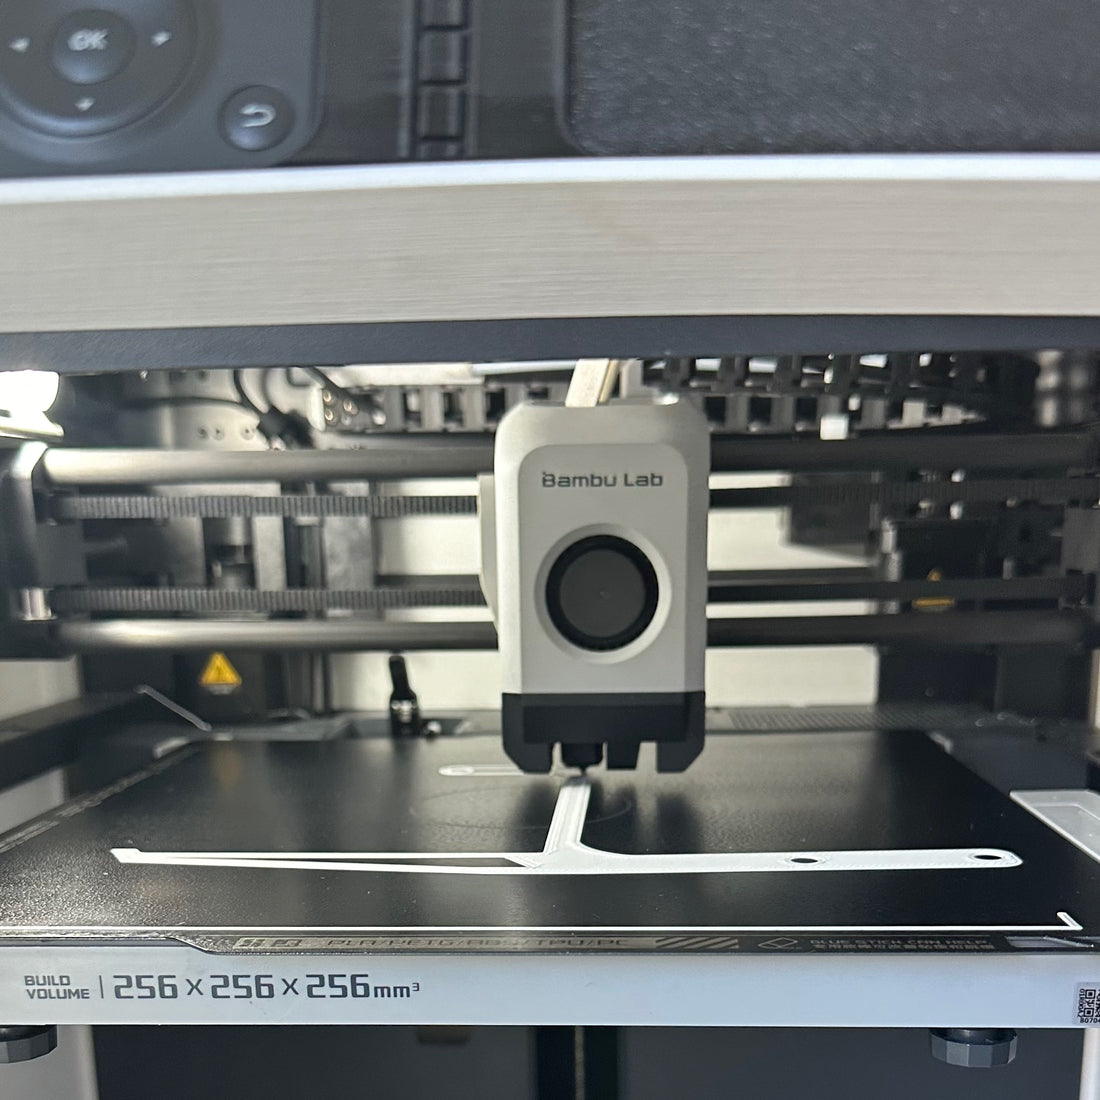 Vorteile und Nachteile von FDM gegenüber anderen 3D-Druckverfahren